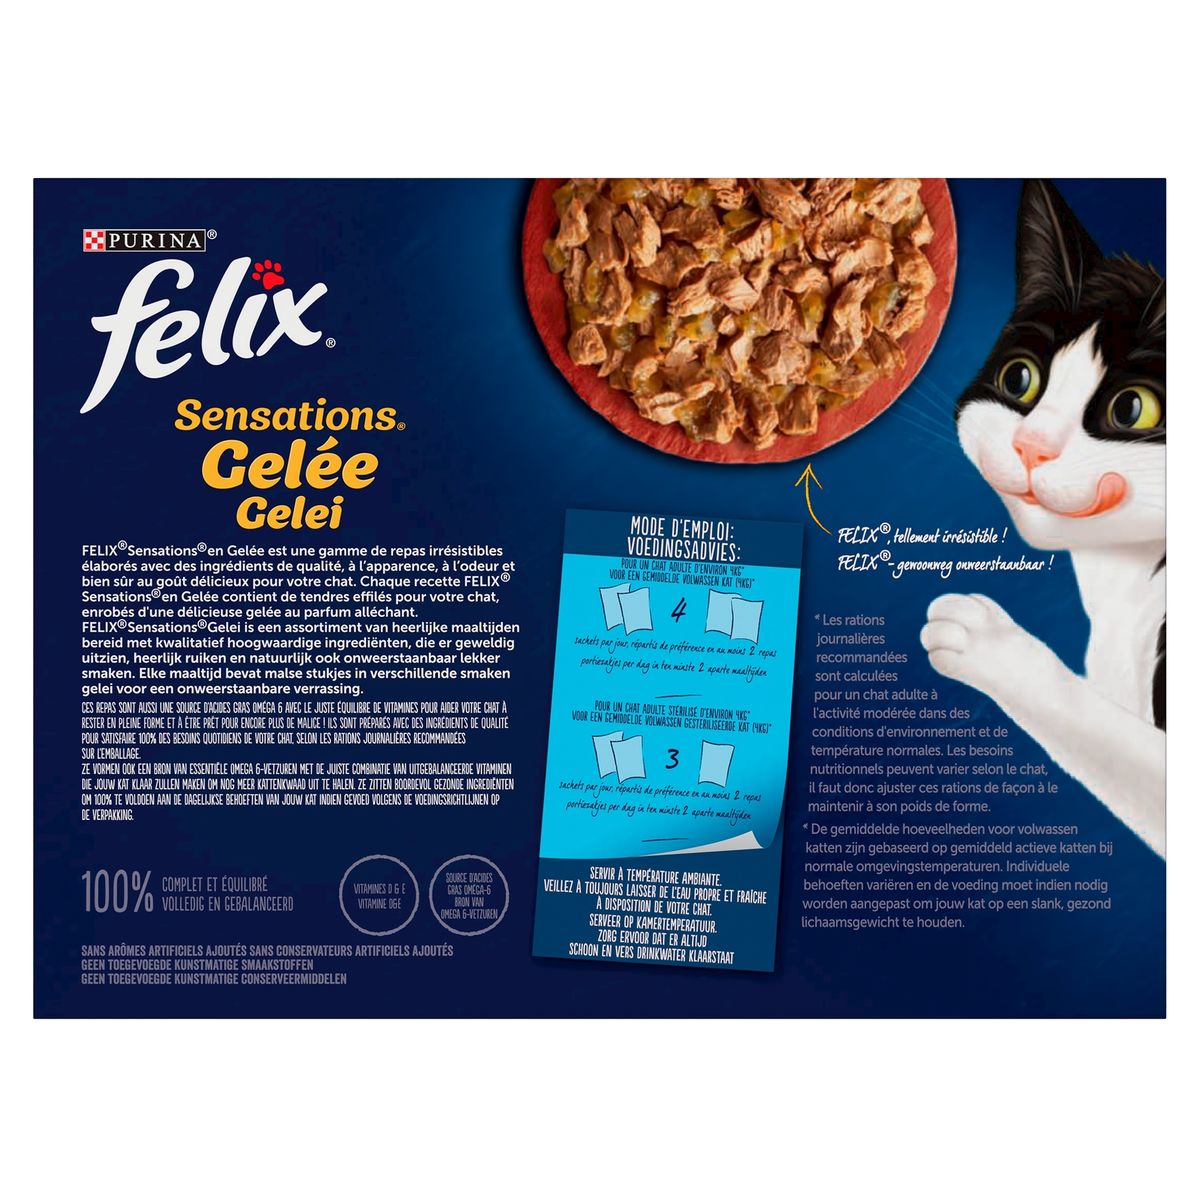 Felix Cat Sensations Countryside Selectie in Gelei (12 x 85 g) x 12